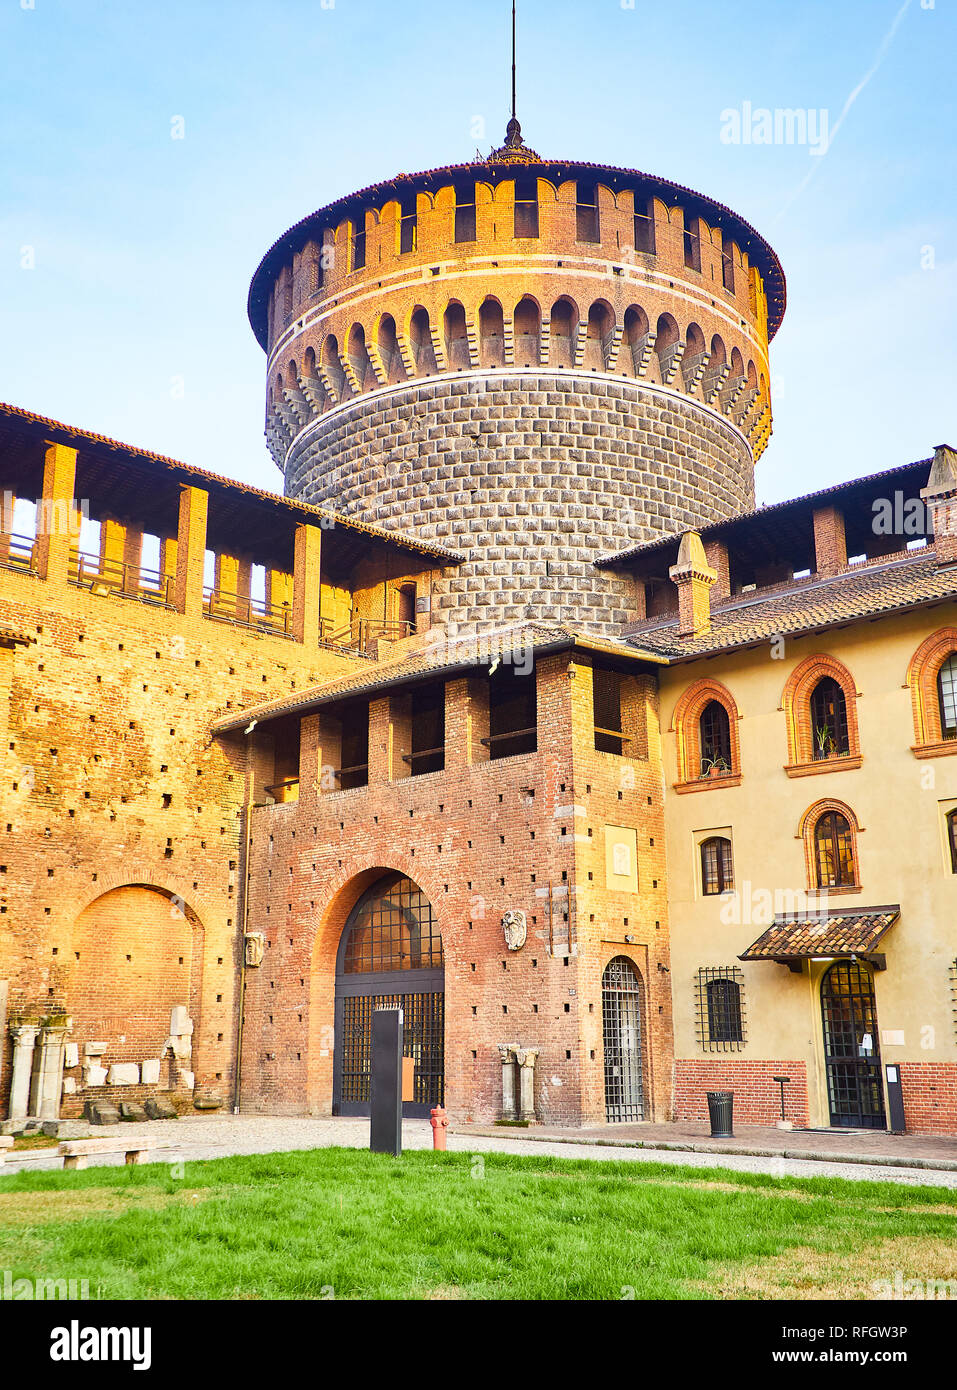 Torrione del Carmine torre del Castello Sforzesco, Castello Sforzesco, al tramonto. Milano, lombardia, italia. Foto Stock